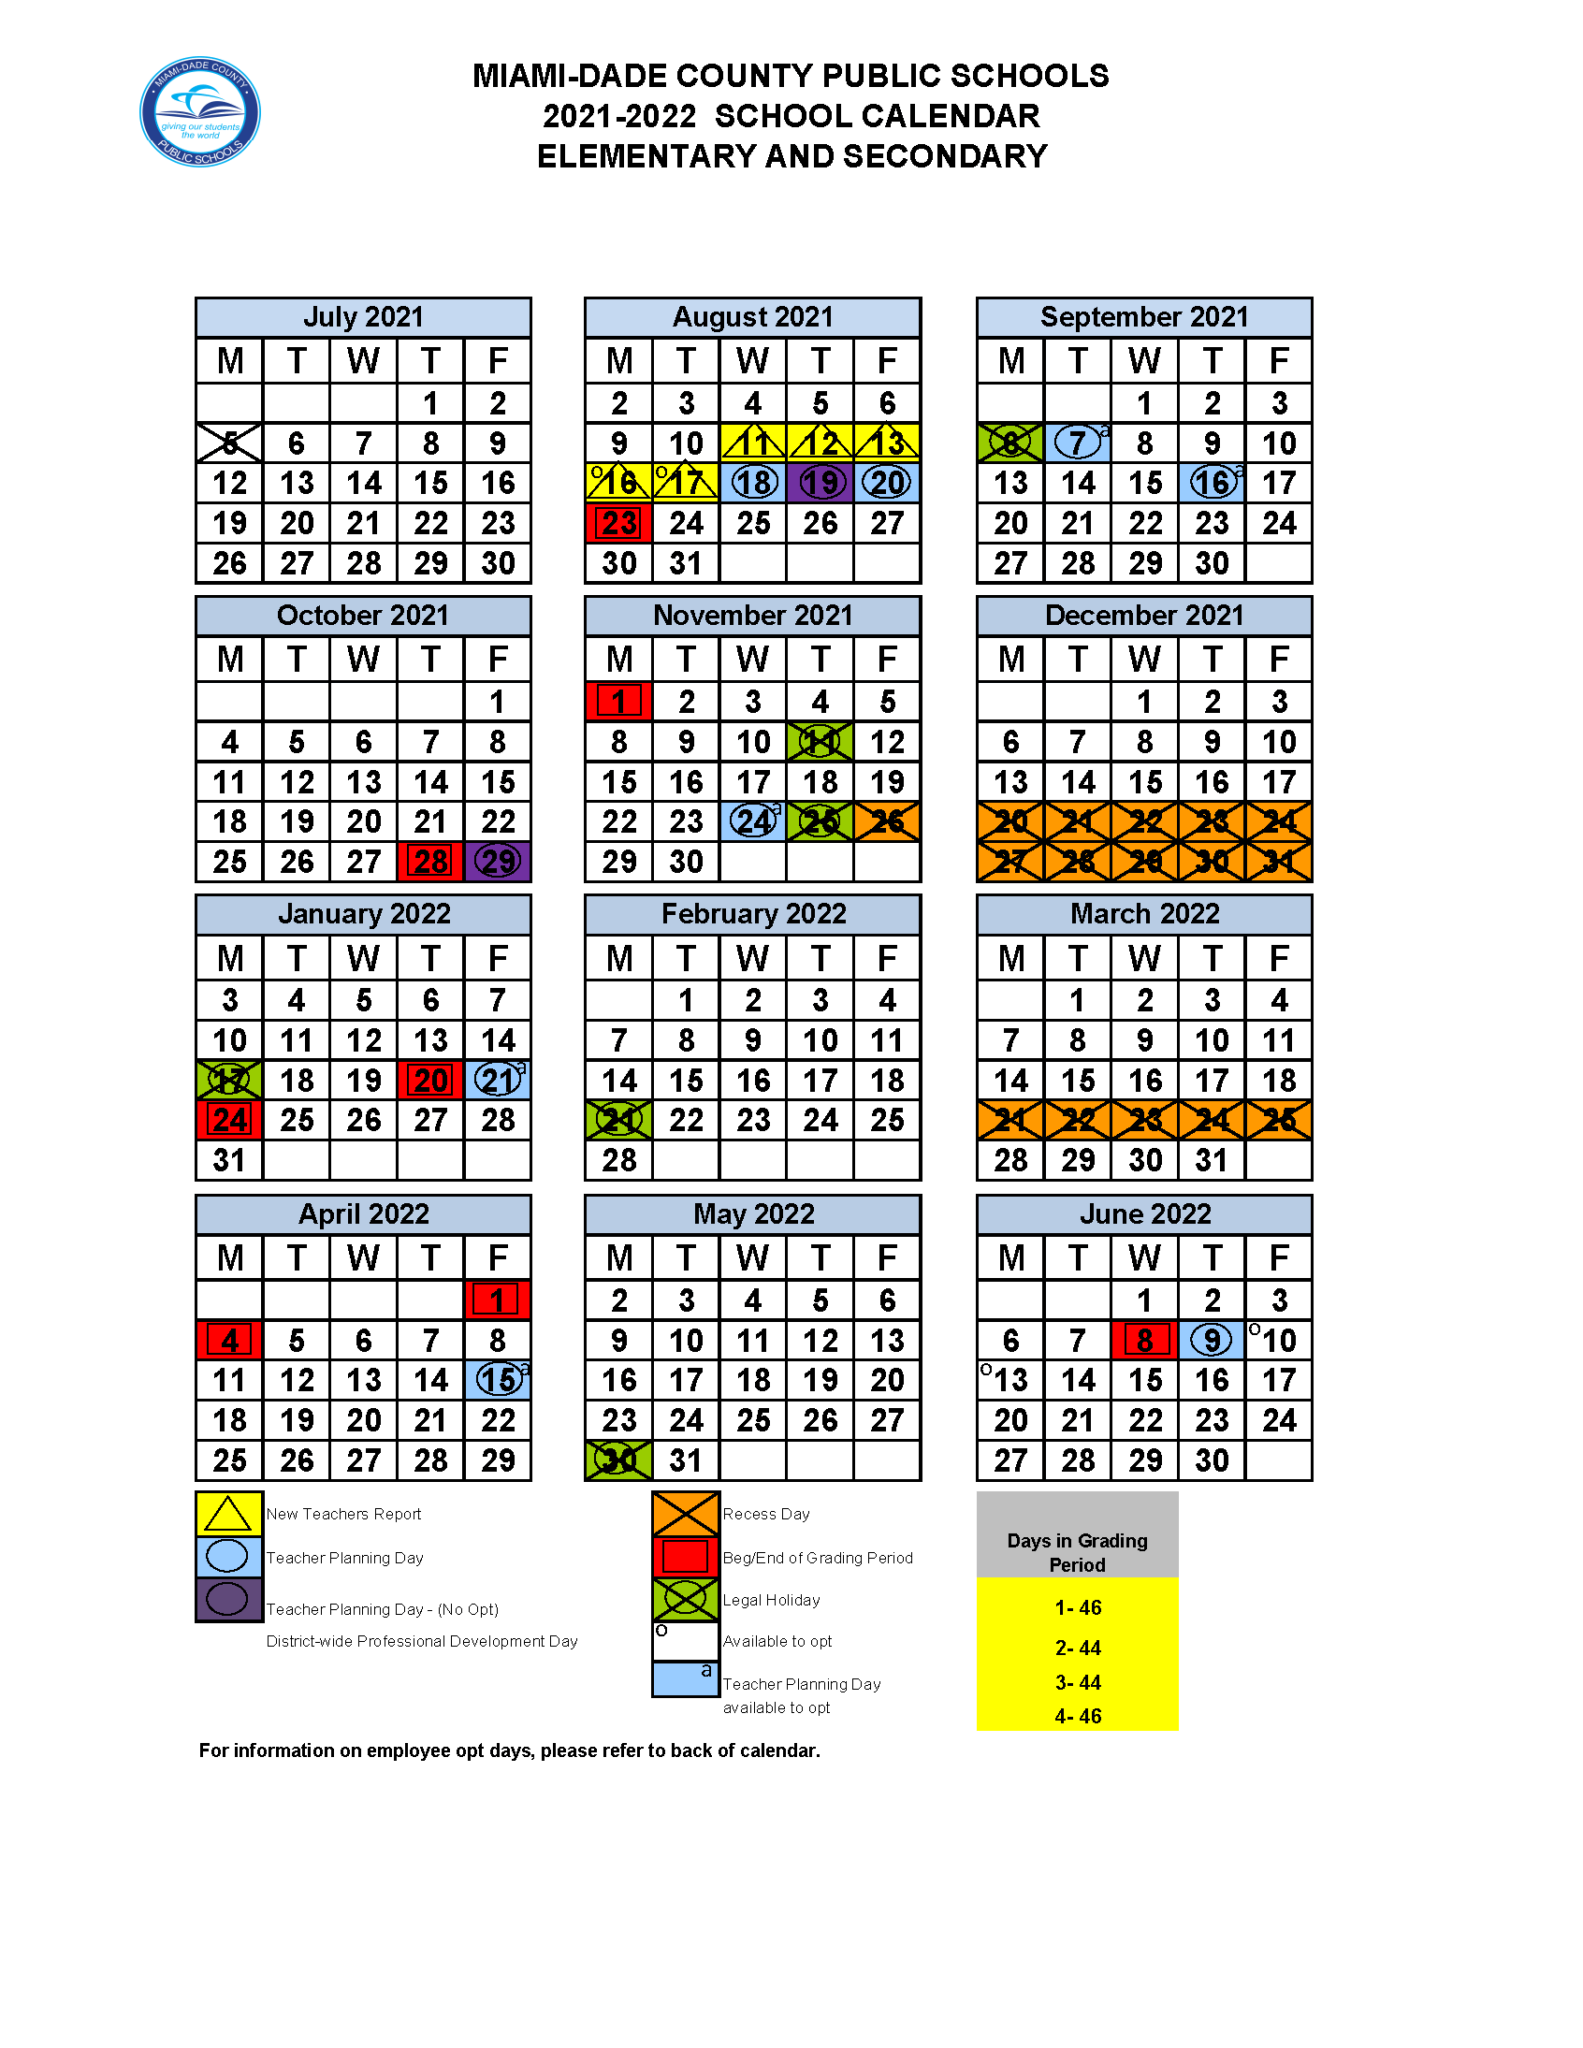 calendario-escolar-2021-a-2022-miami-dade-calendario-escolar-condado